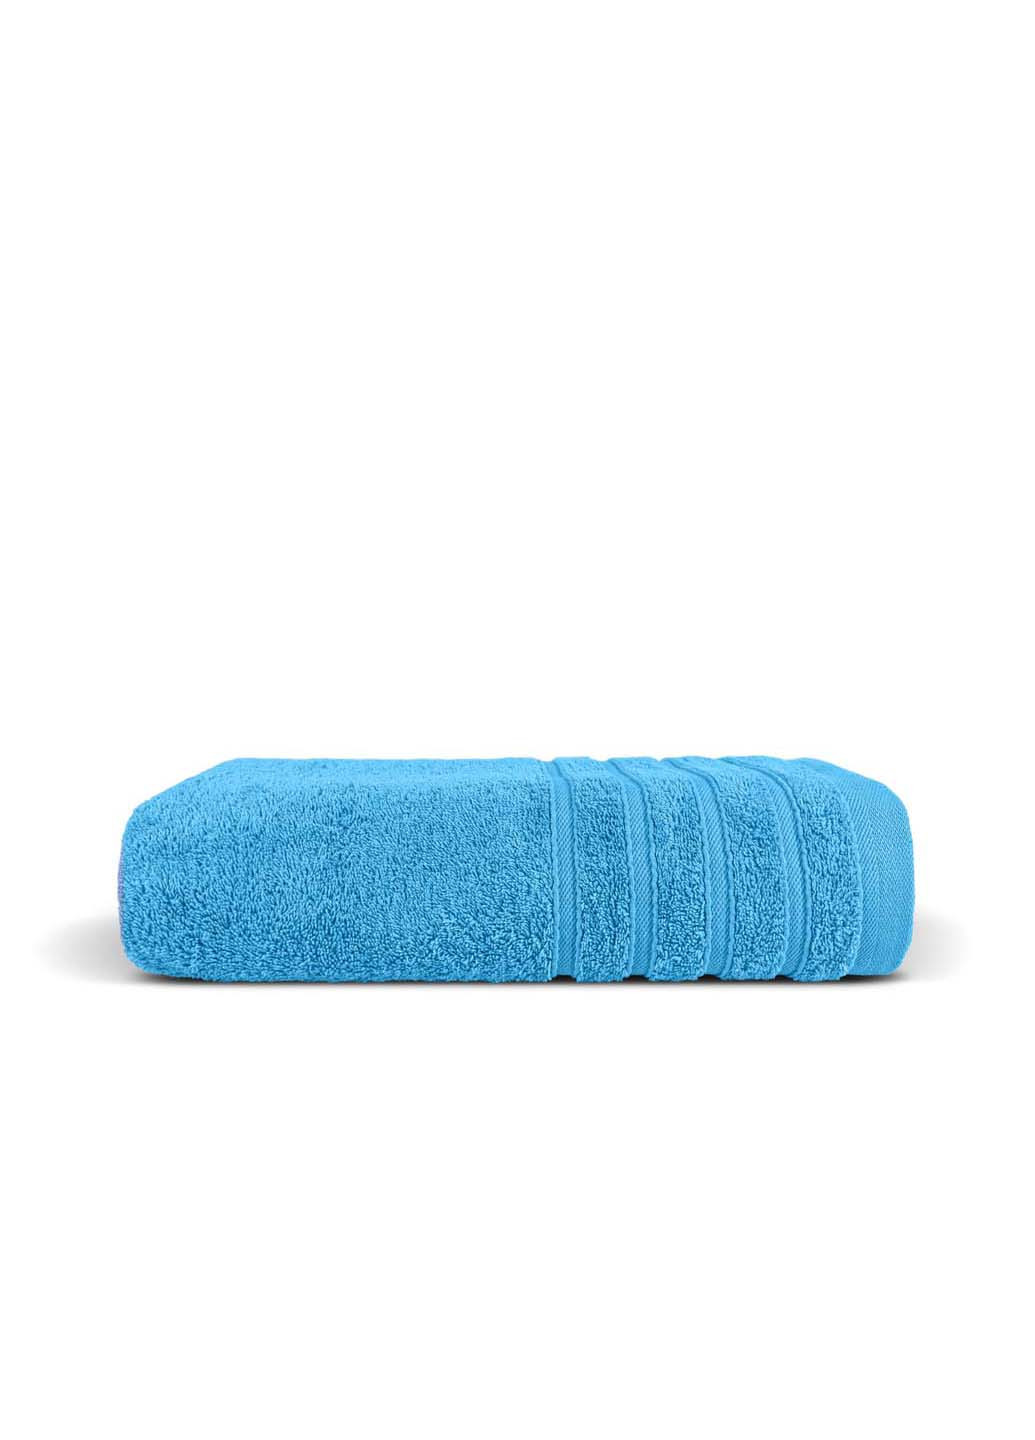 Cosas полотенце махровое 40х70 см голубой производство -